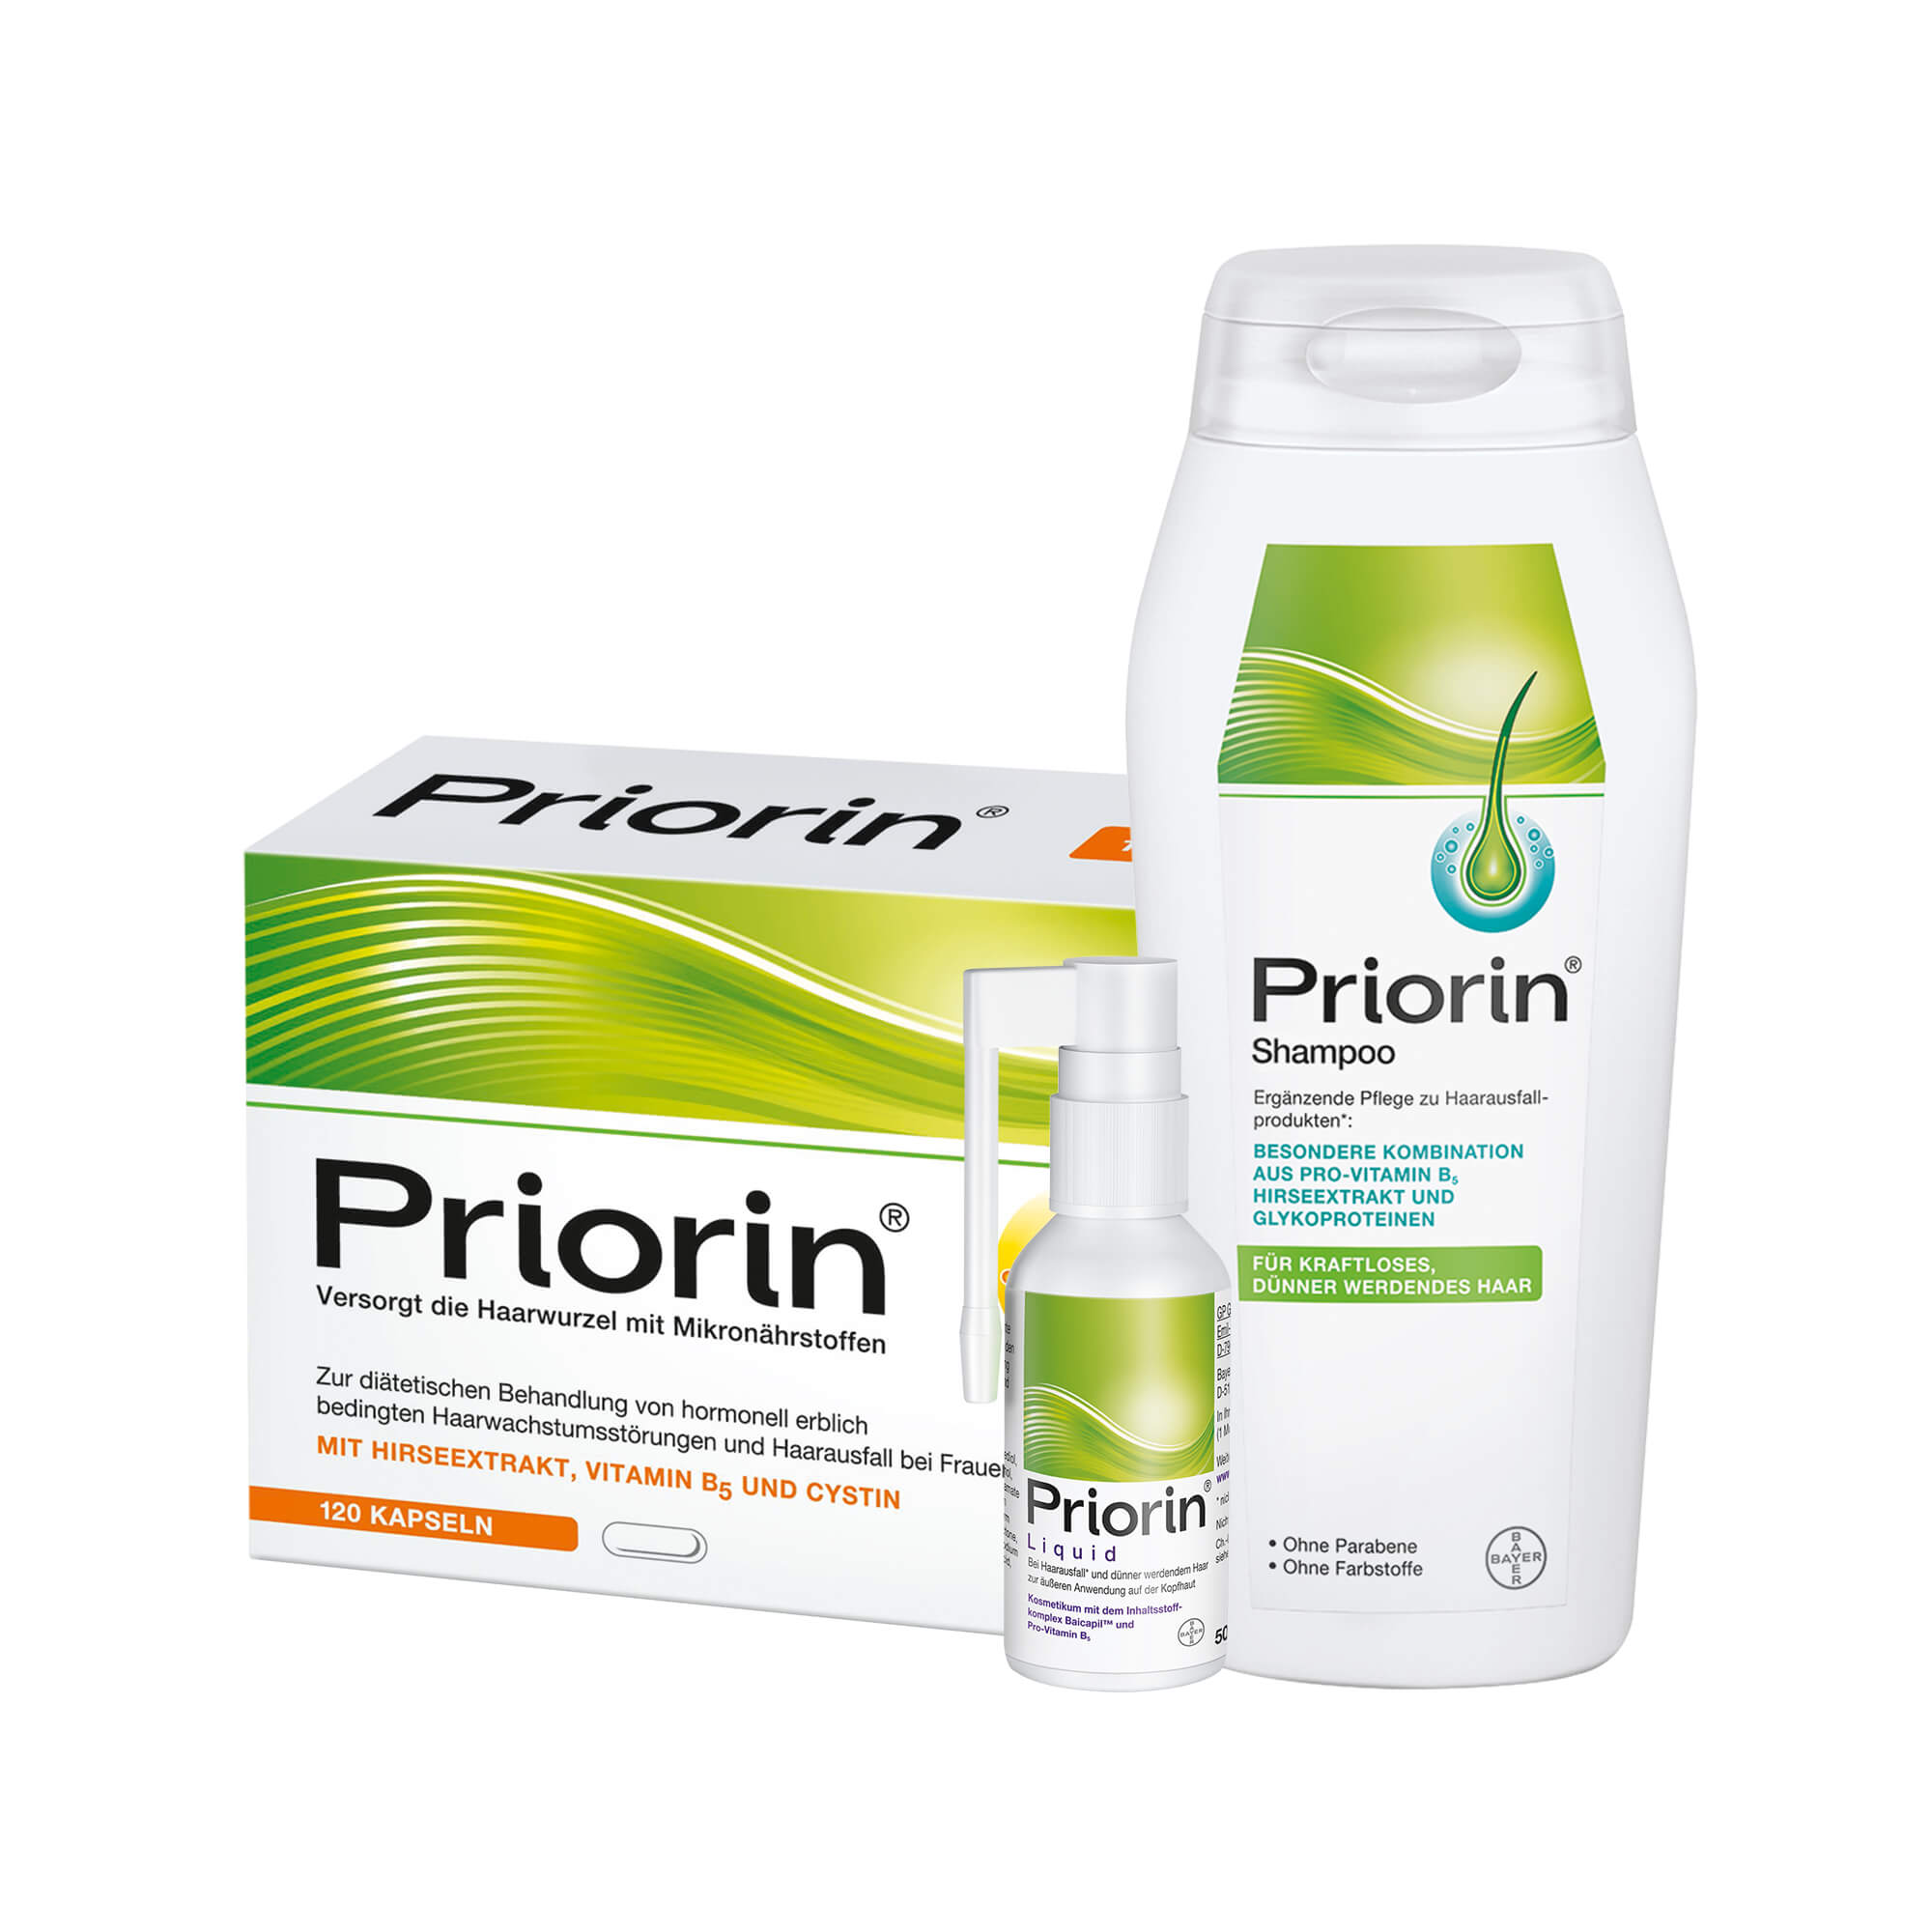 Dieses Set besteht aus Priorin Kapseln, Priorin Shampoo und Priorin Liquid.